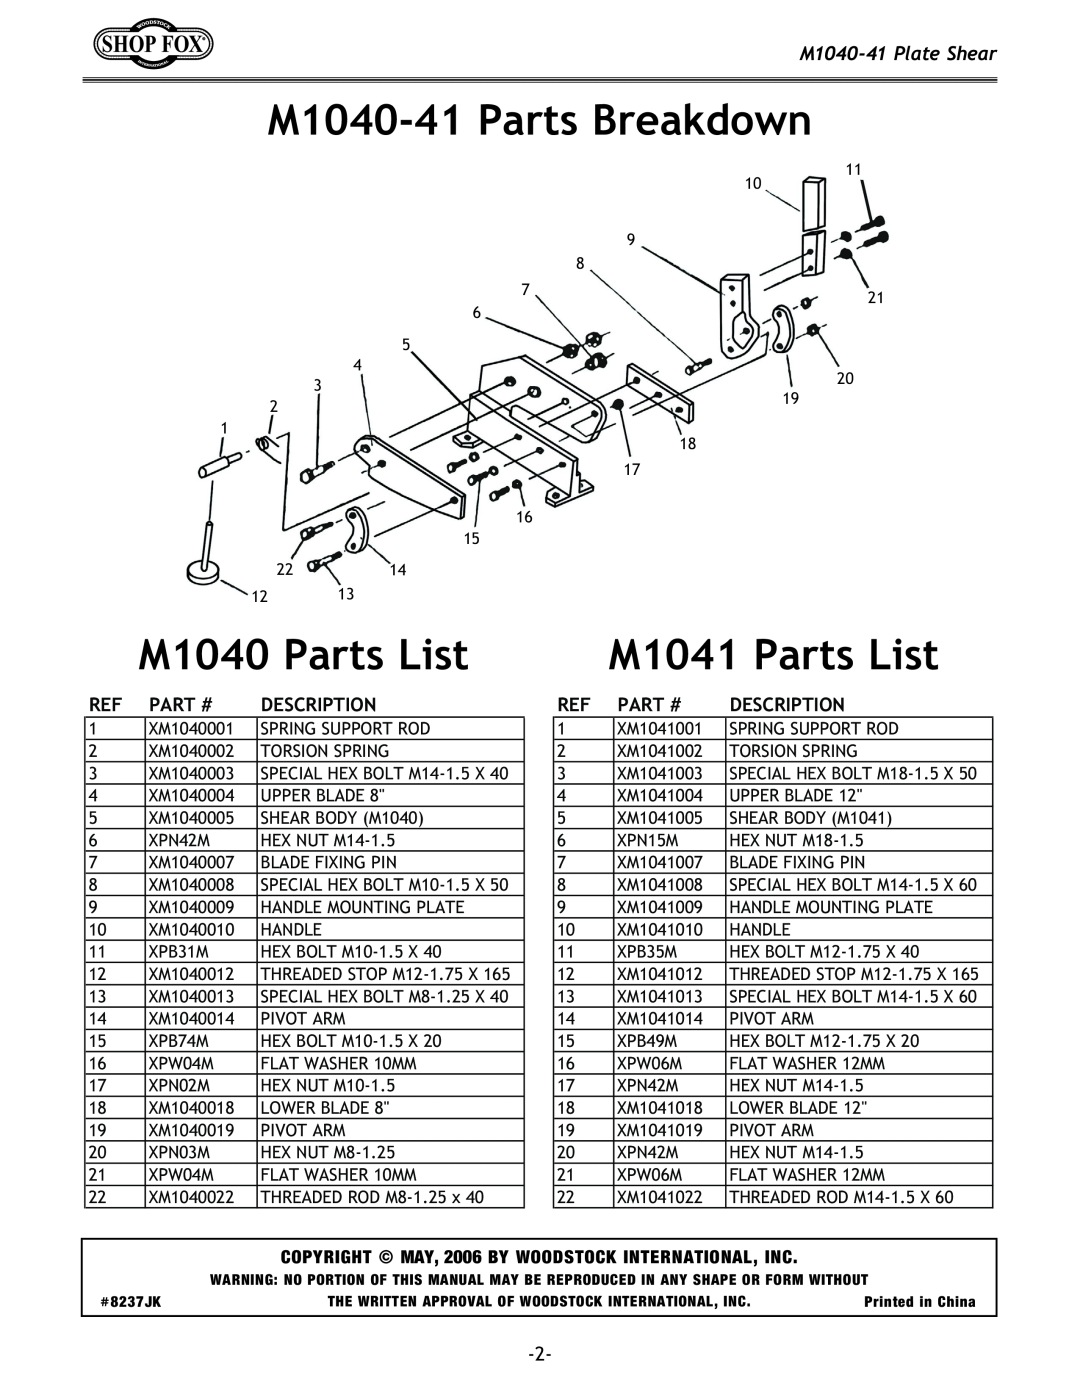 Woodstock M1040-41Parts Breakdown, M1040 Parts List, M1041 Parts List, M1040-41Plate Shear, Part#, Description 